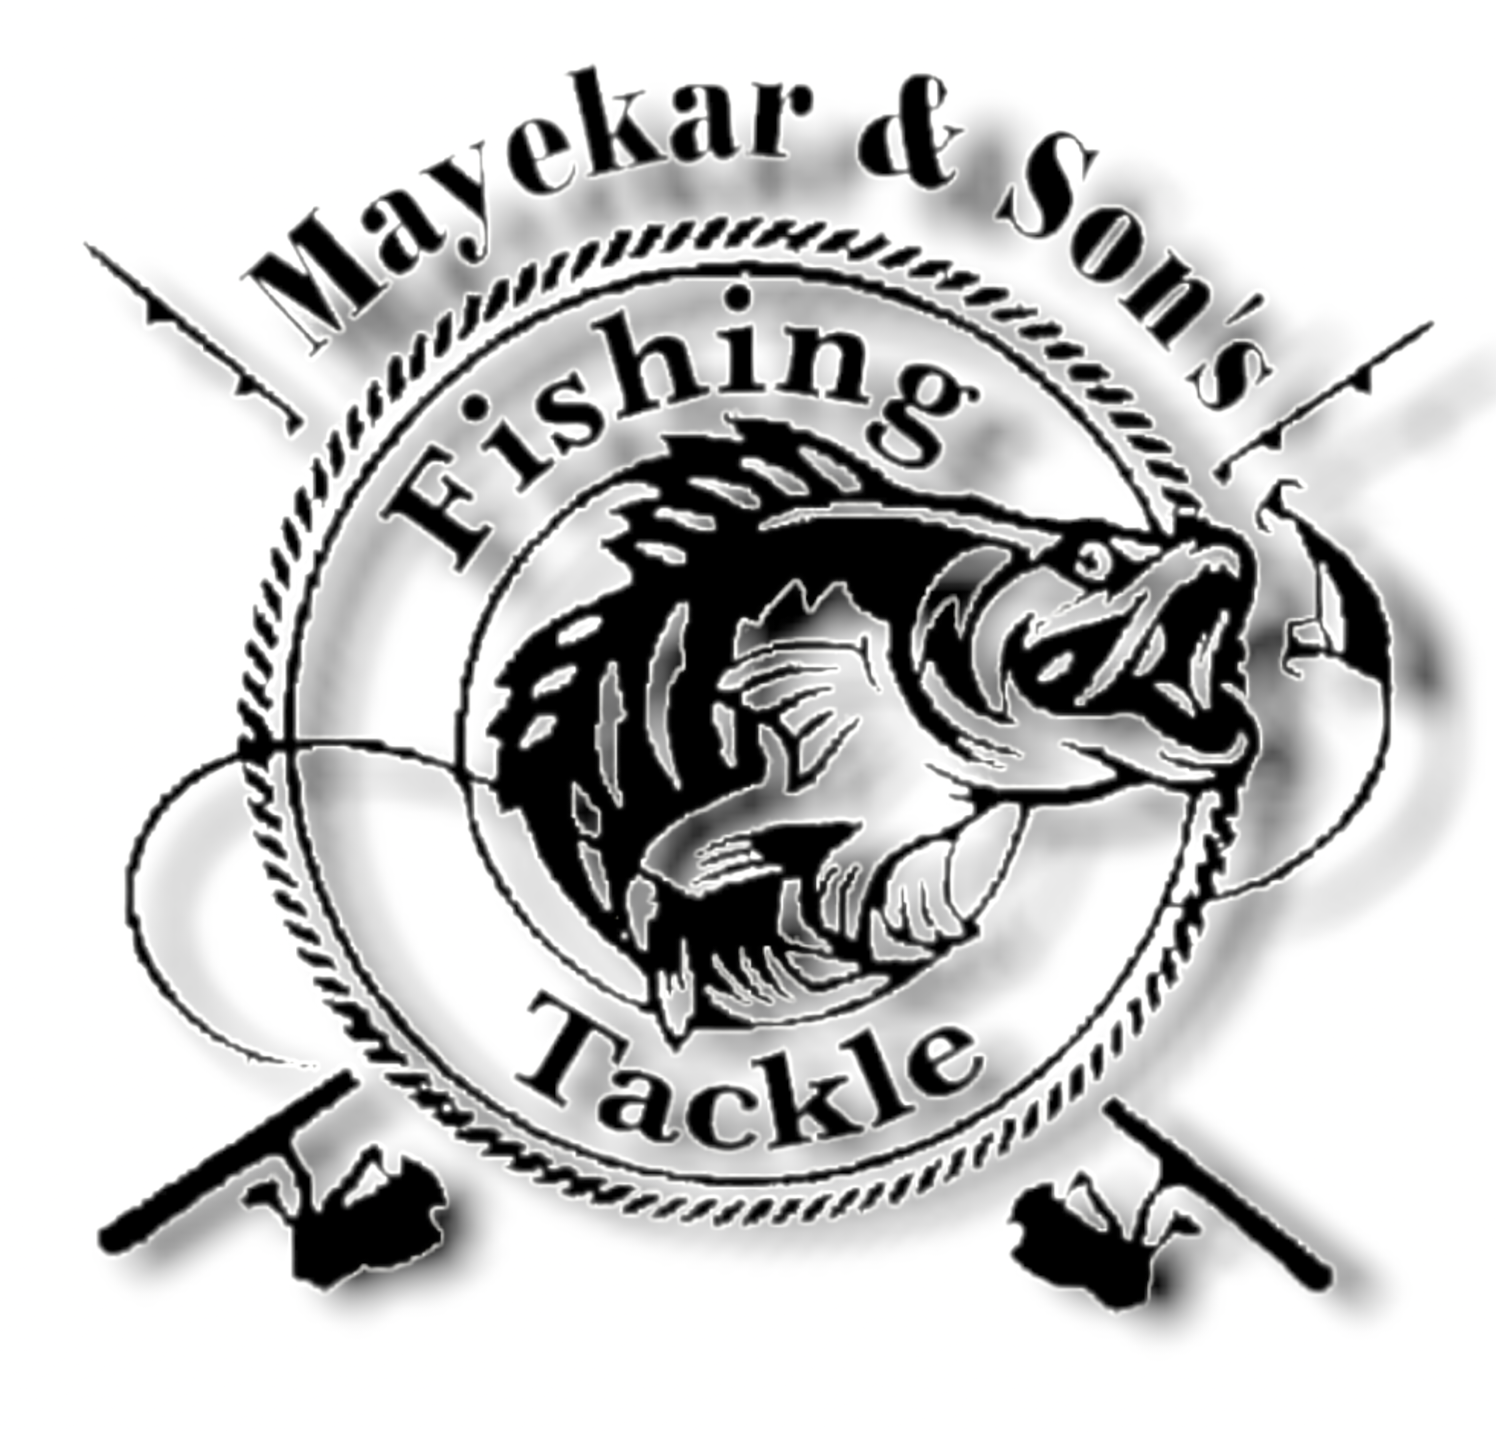 TERMINAL TACKLE - Mayekar and Sons Fishing Tackle